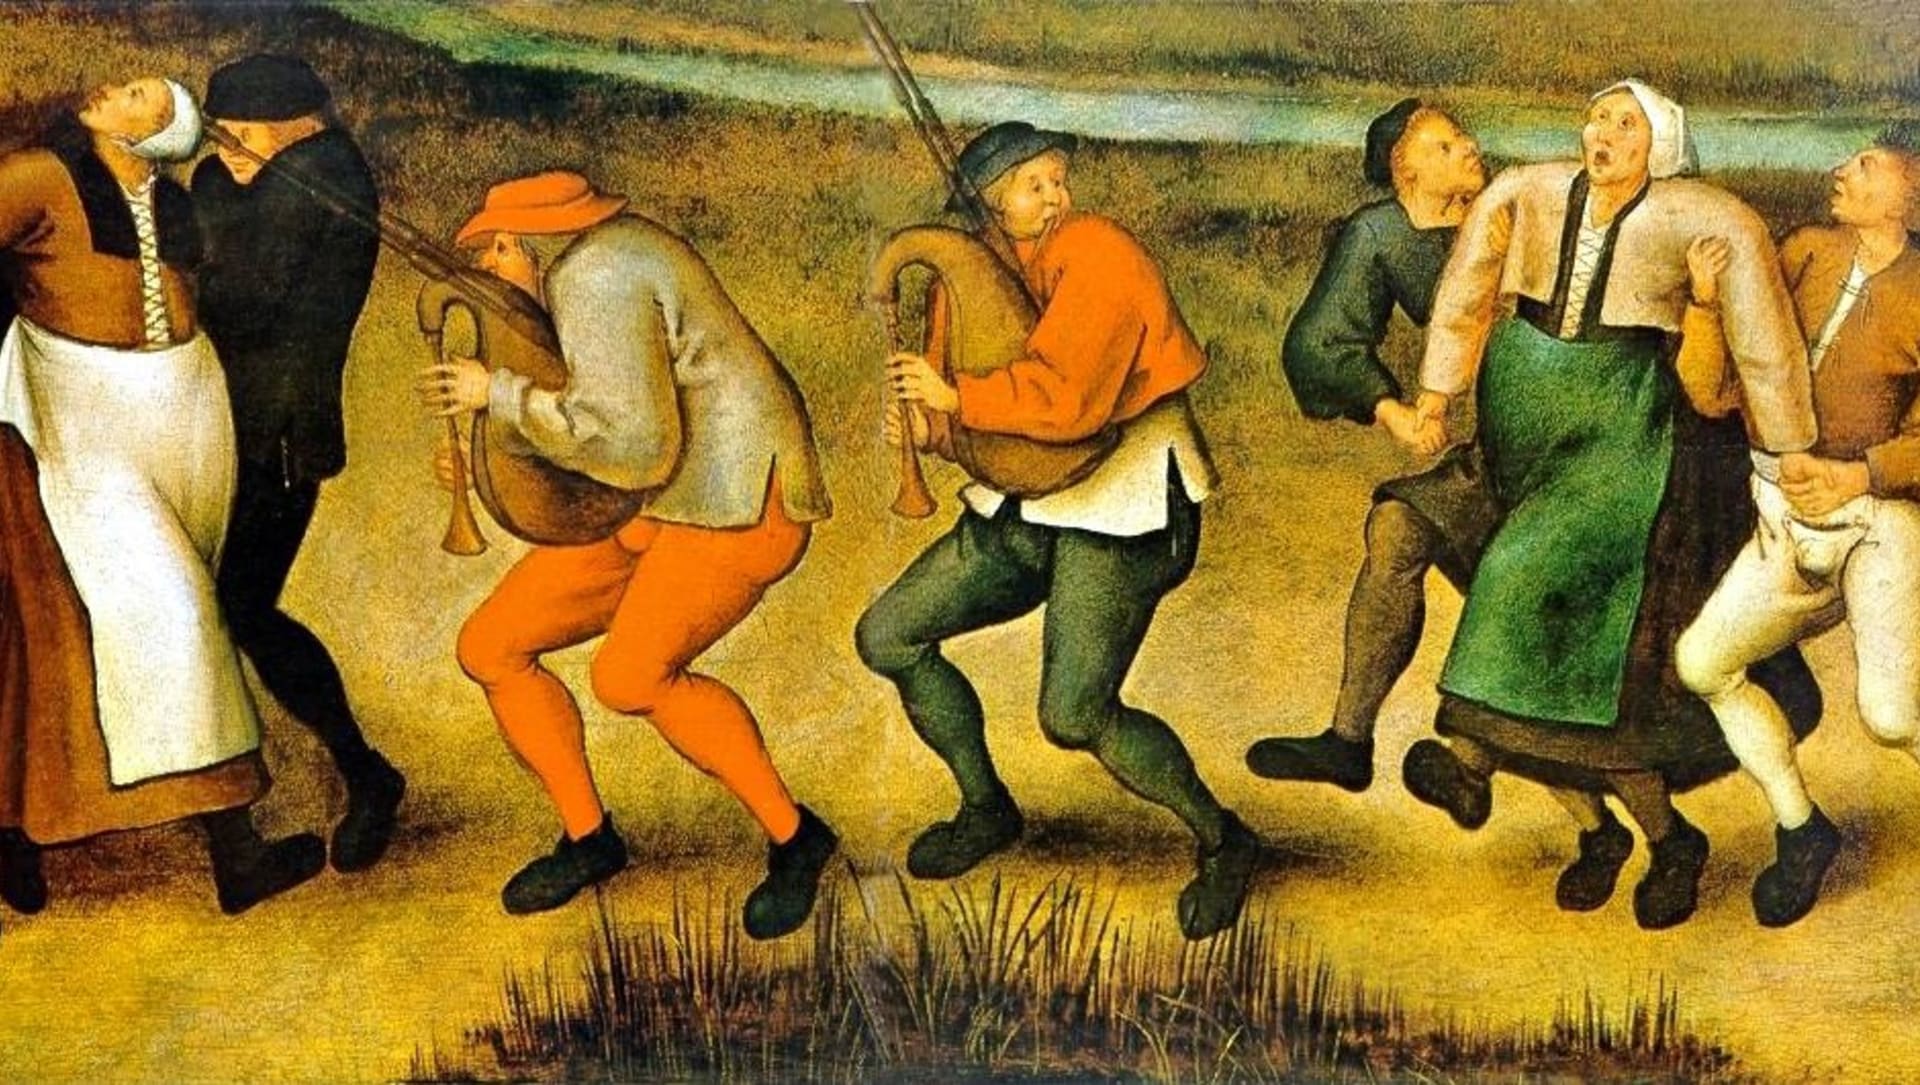 Vyobrazení tanečního moru od nizozemského malíře Pietera Brueghela mladšího.